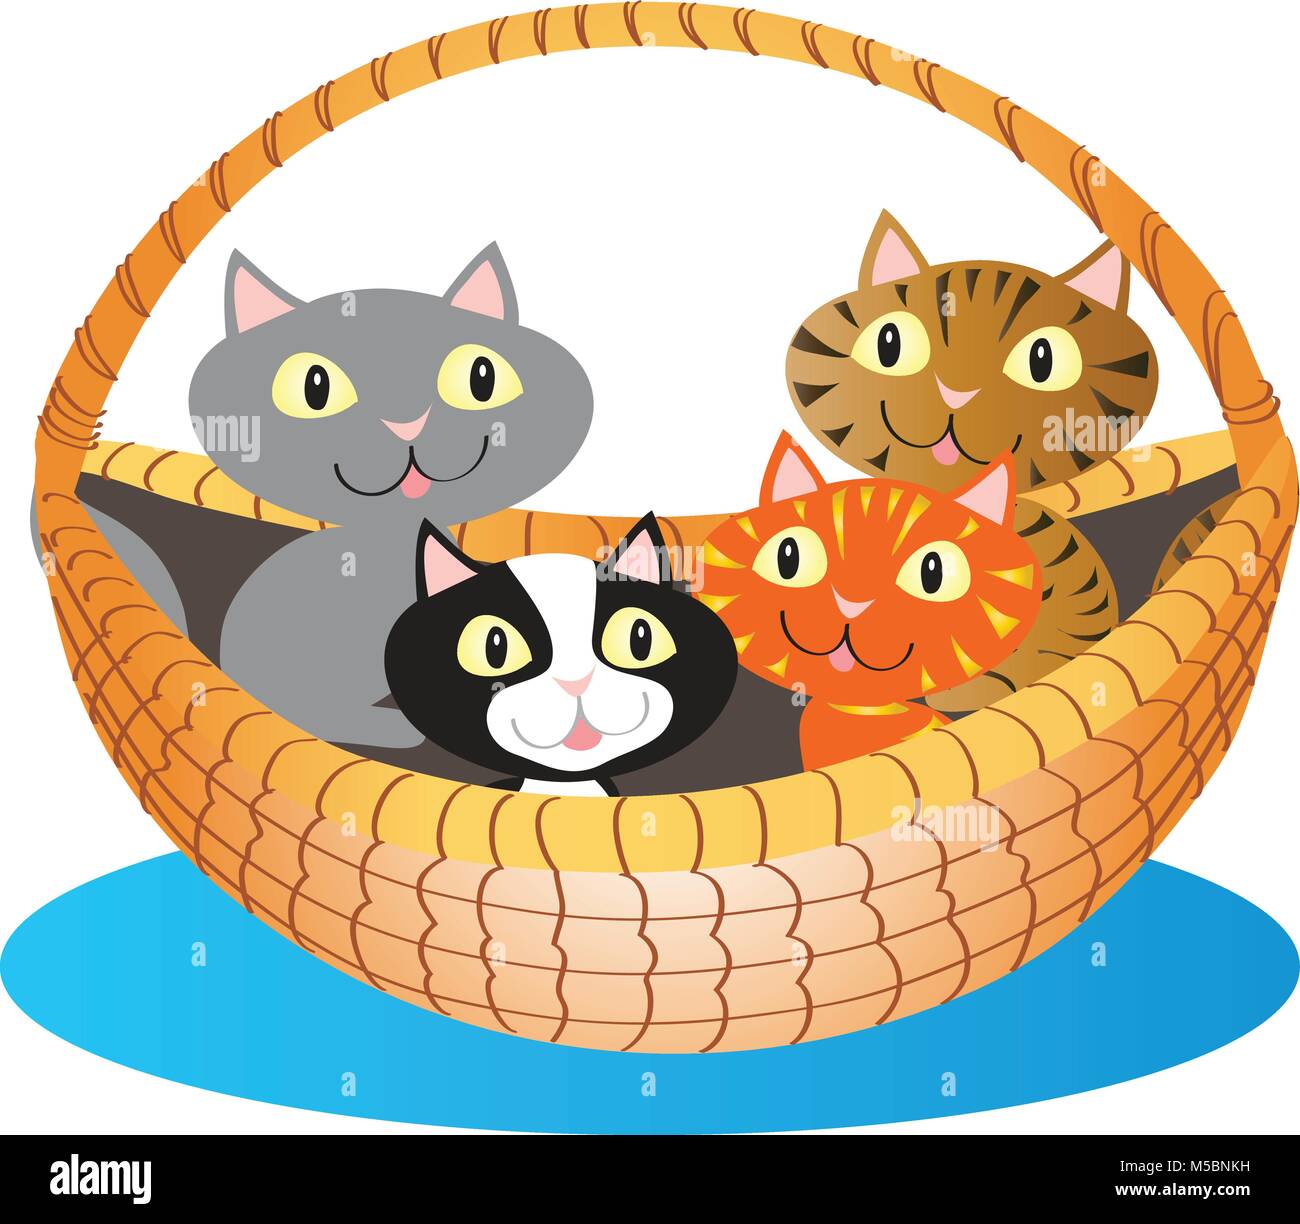 A cartoon basket a cute little kittens Stock Vector